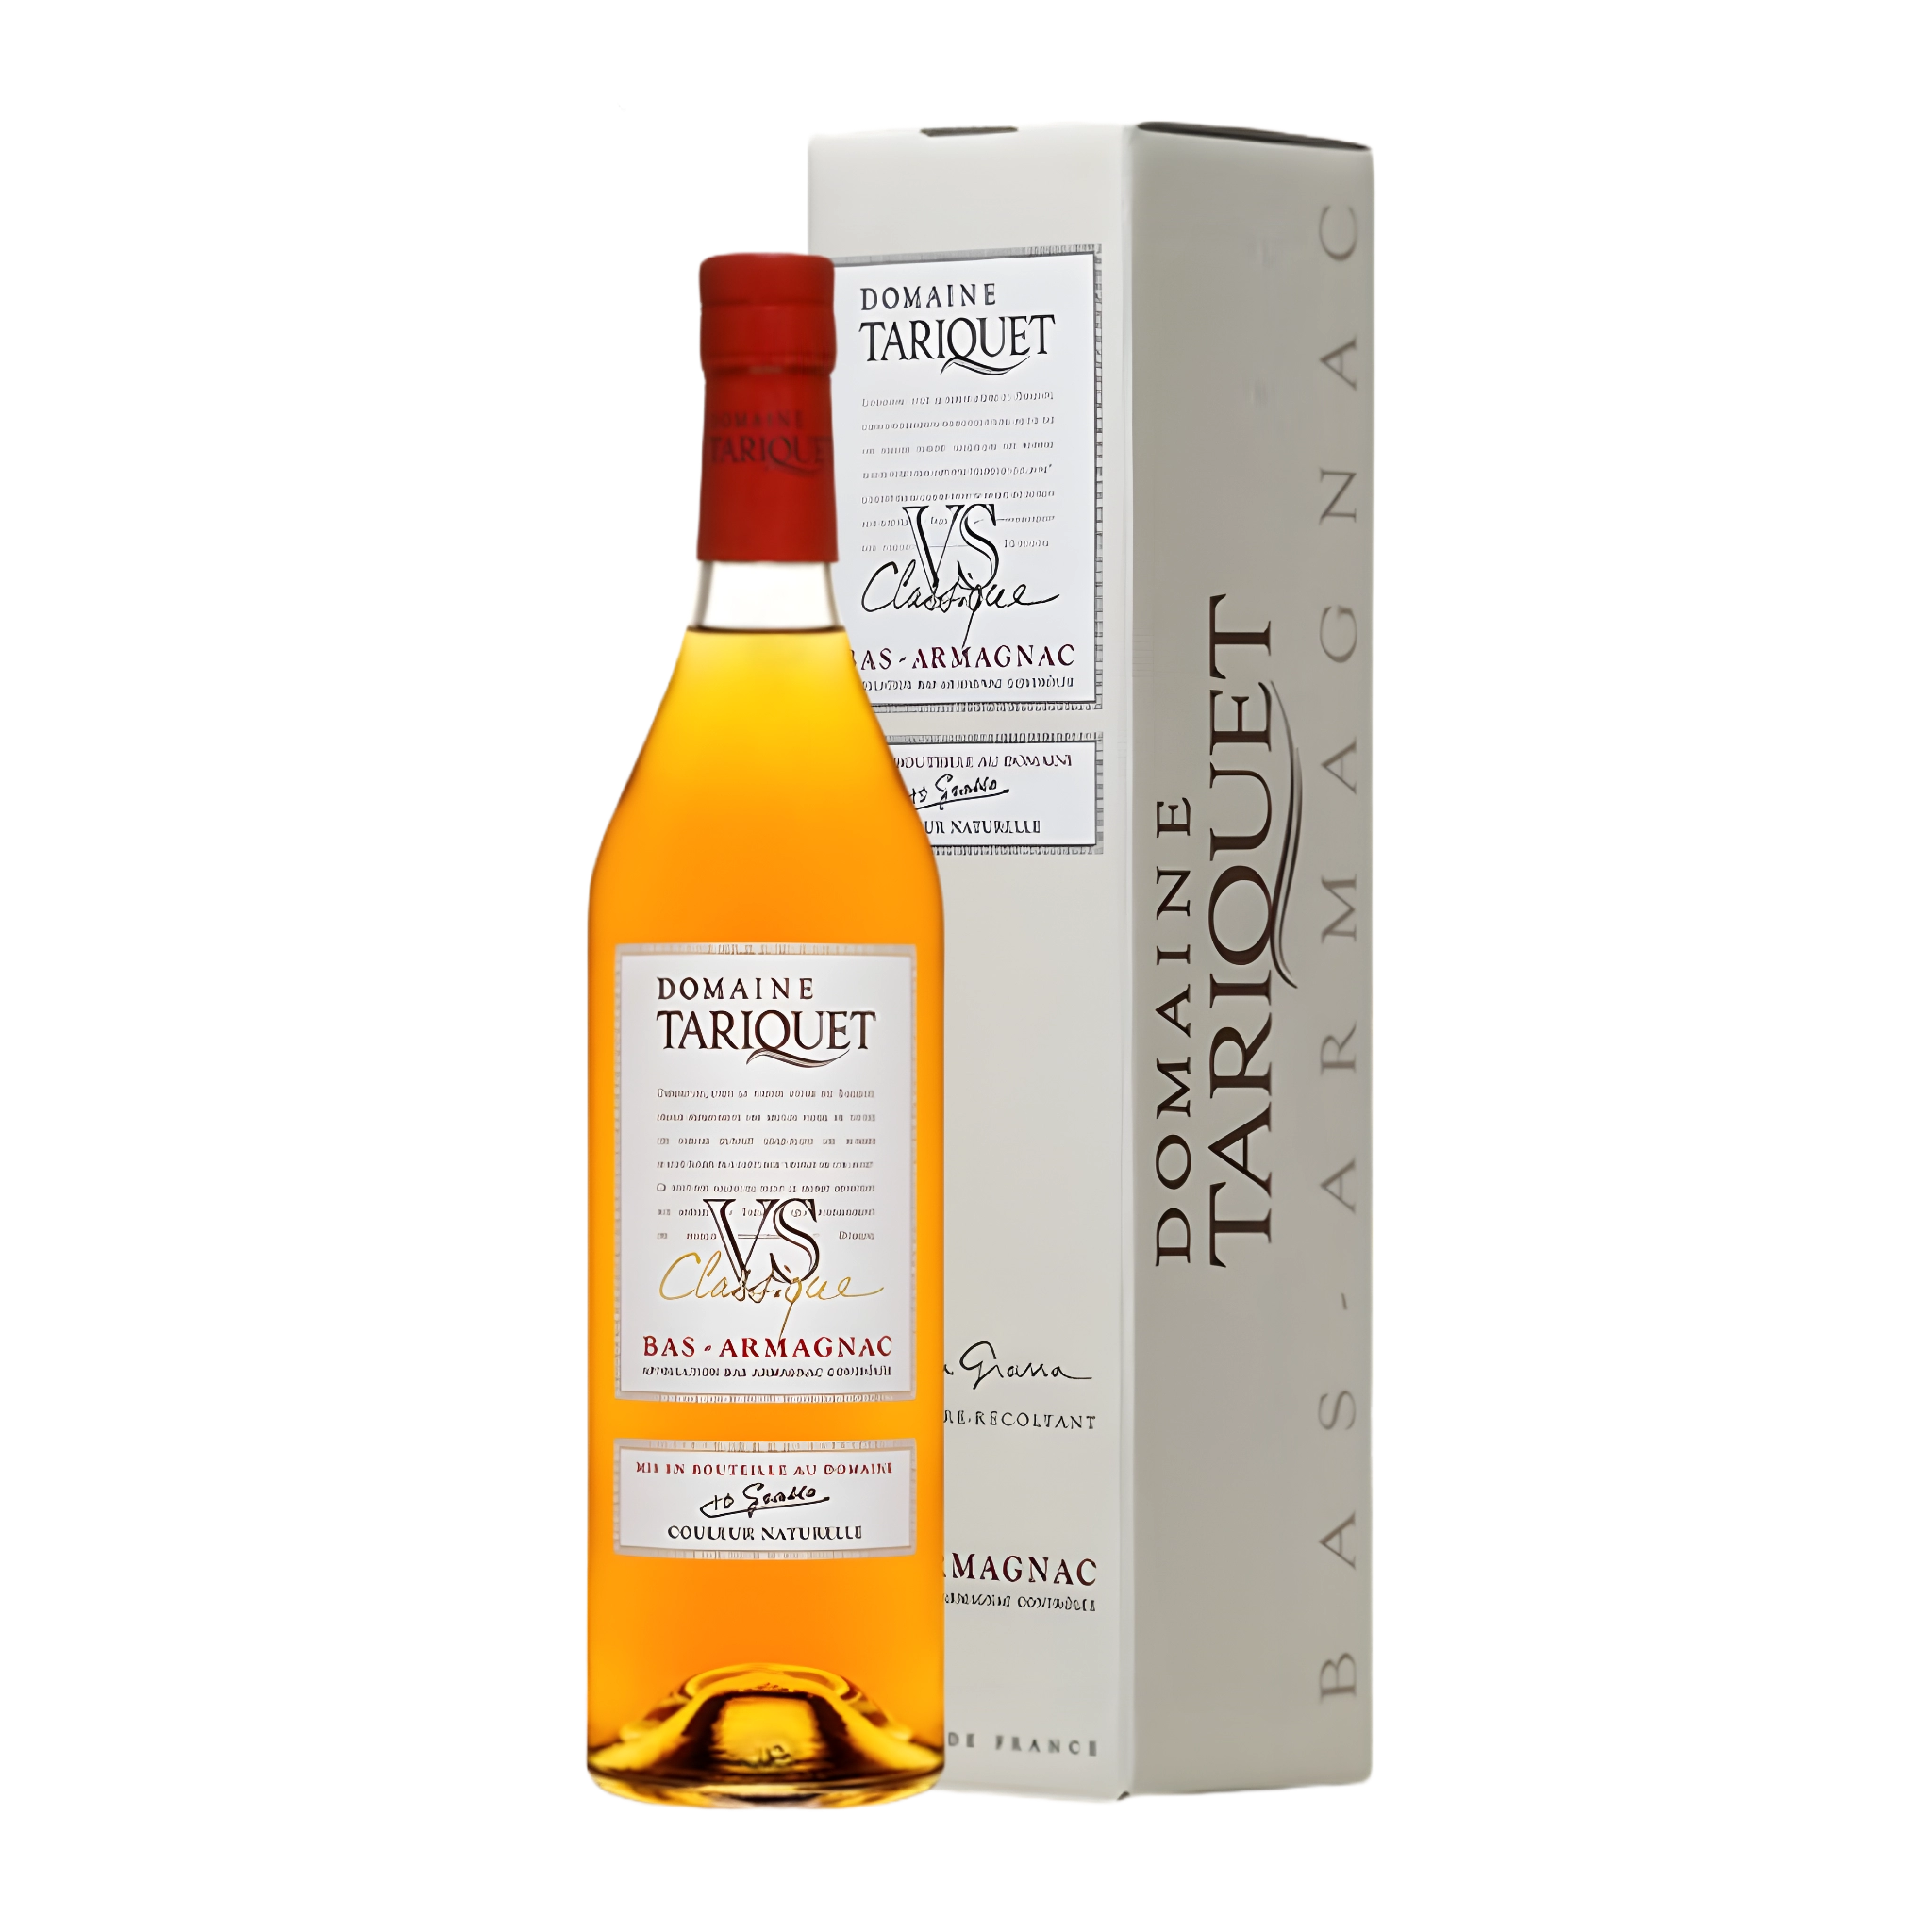 Rượu Brandy Pháp Domaine Tariquet VS Classique Bas-Armagnac with Gift Box